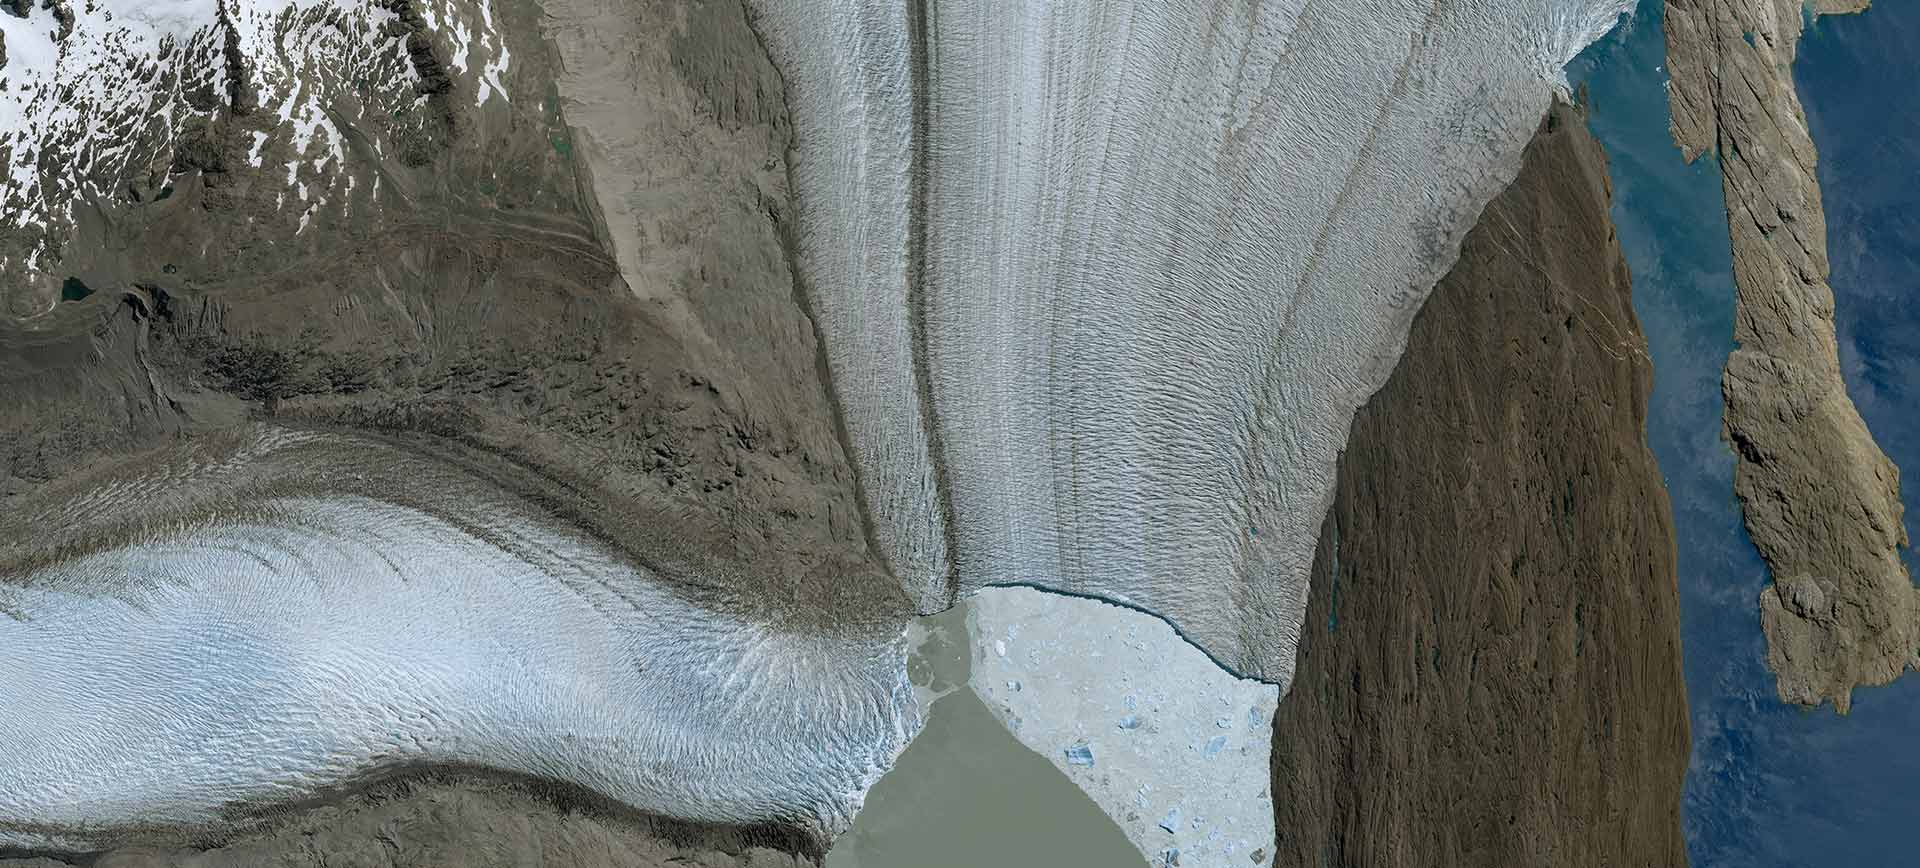 Pléiades Neo - Upsala glacier, Argentina